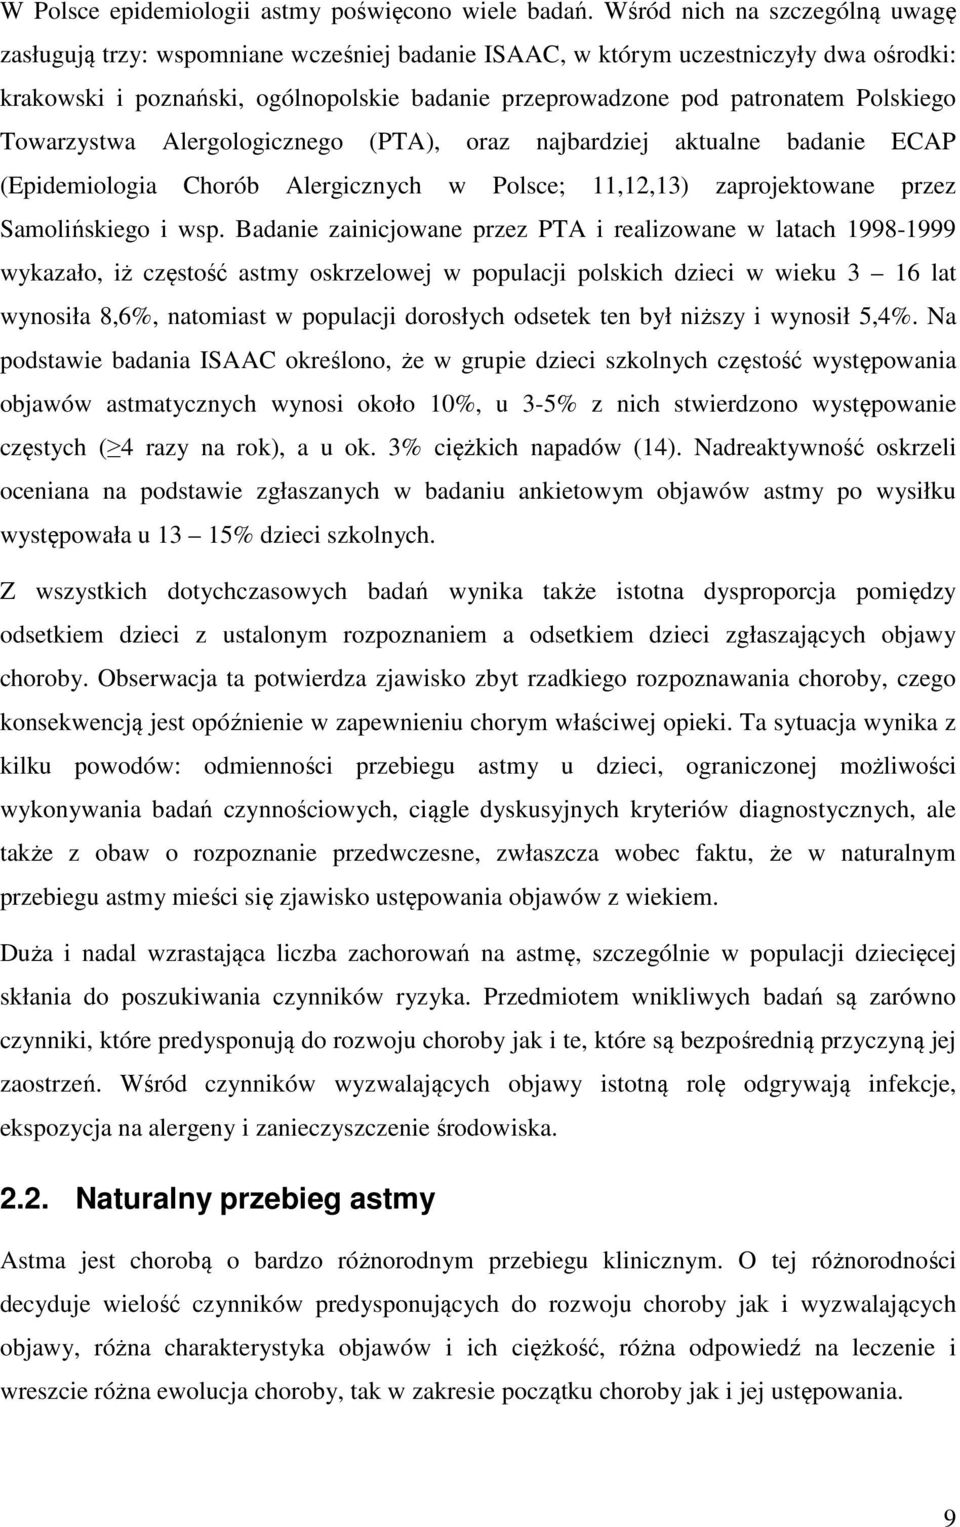 Polskiego Towarzystwa Alergologicznego (PTA), oraz najbardziej aktualne badanie ECAP (Epidemiologia Chorób Alergicznych w Polsce; 11,12,13) zaprojektowane przez Samolińskiego i wsp.